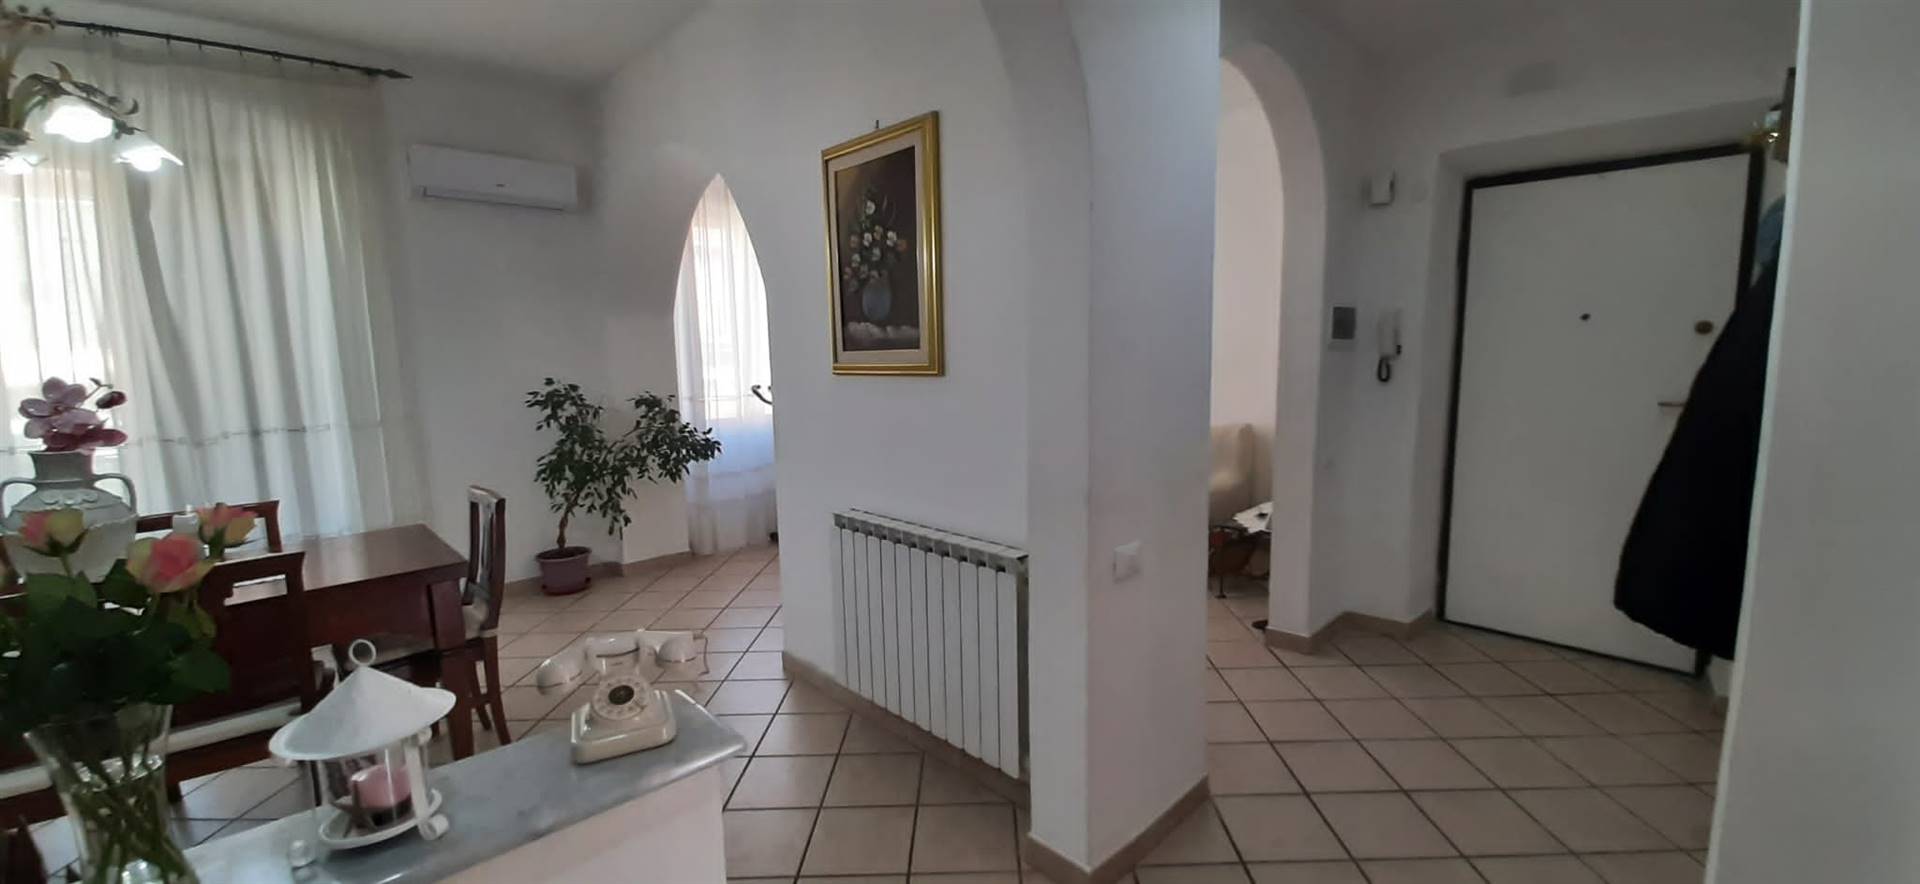 Appartamento in vendita a La Spezia, 4 locali, zona Località: CENTRO, prezzo € 190.000 | CambioCasa.it